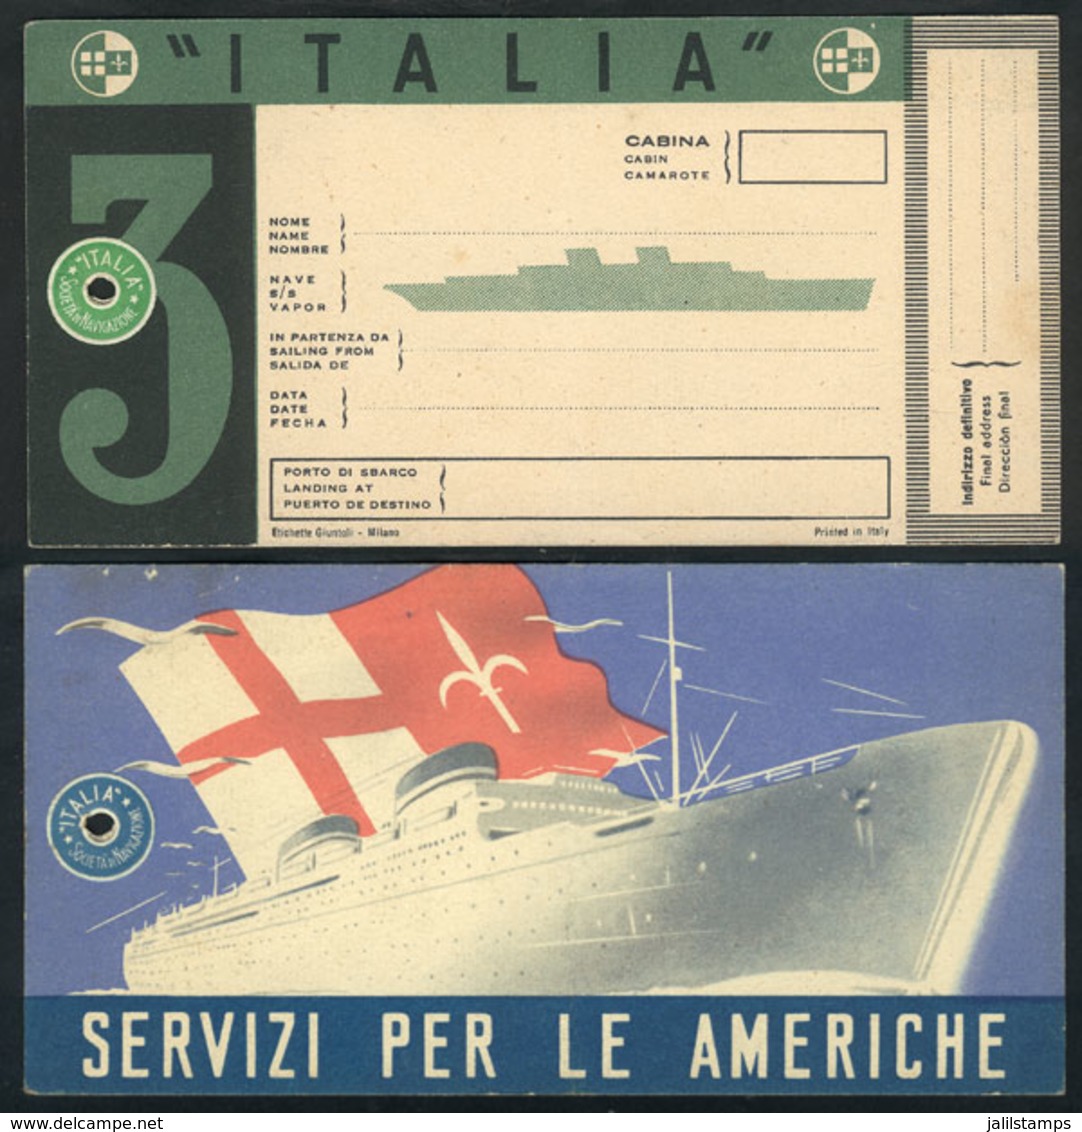 1234 ITALY: Luggage Label Of Ship "Italia", Societa Di Navigazione Genova, Unused, Circa 1 - Publicité